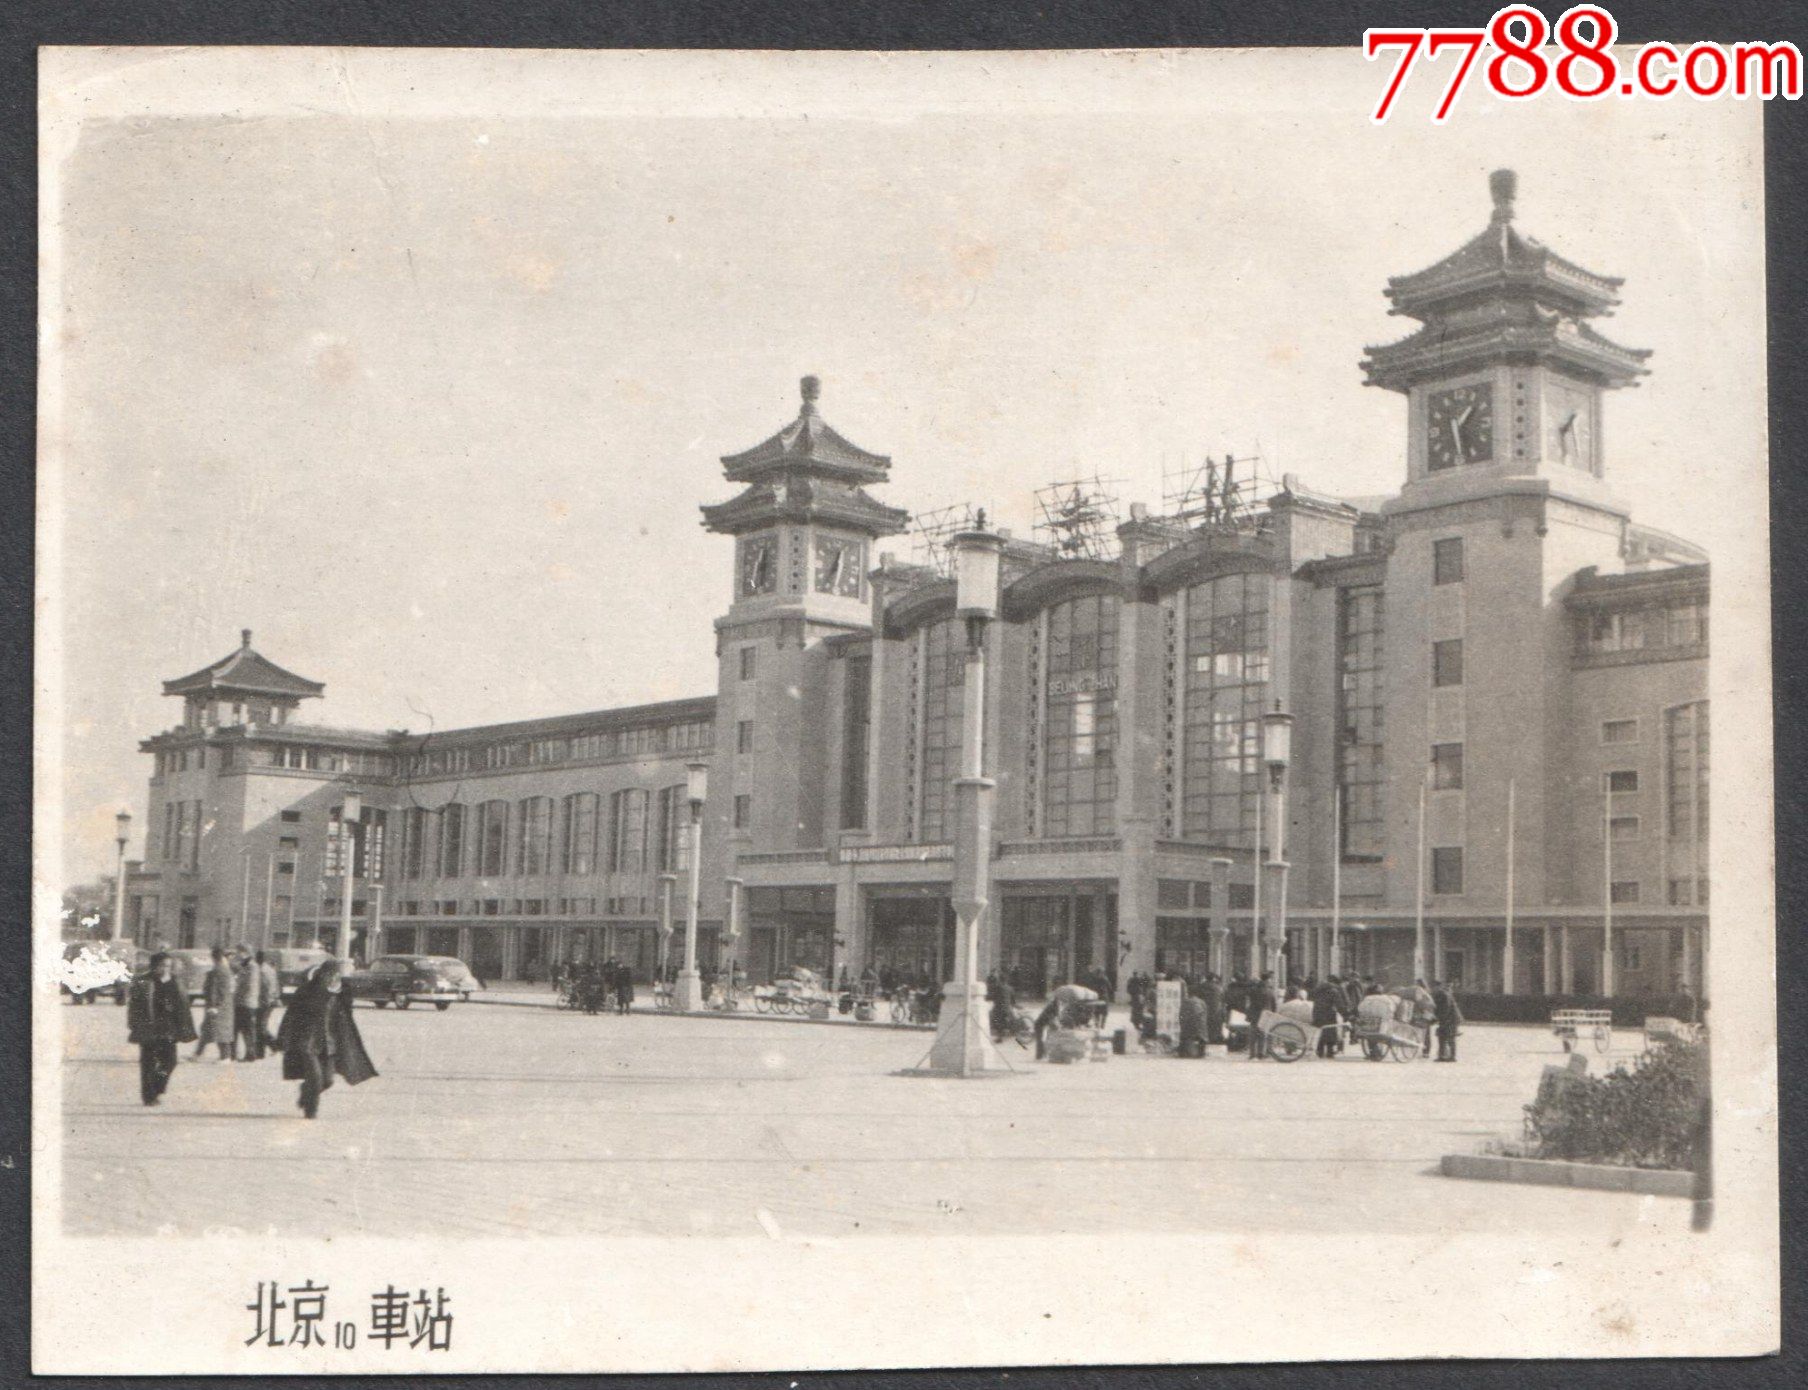 五十年代,刚刚建成的北京火车站老照片